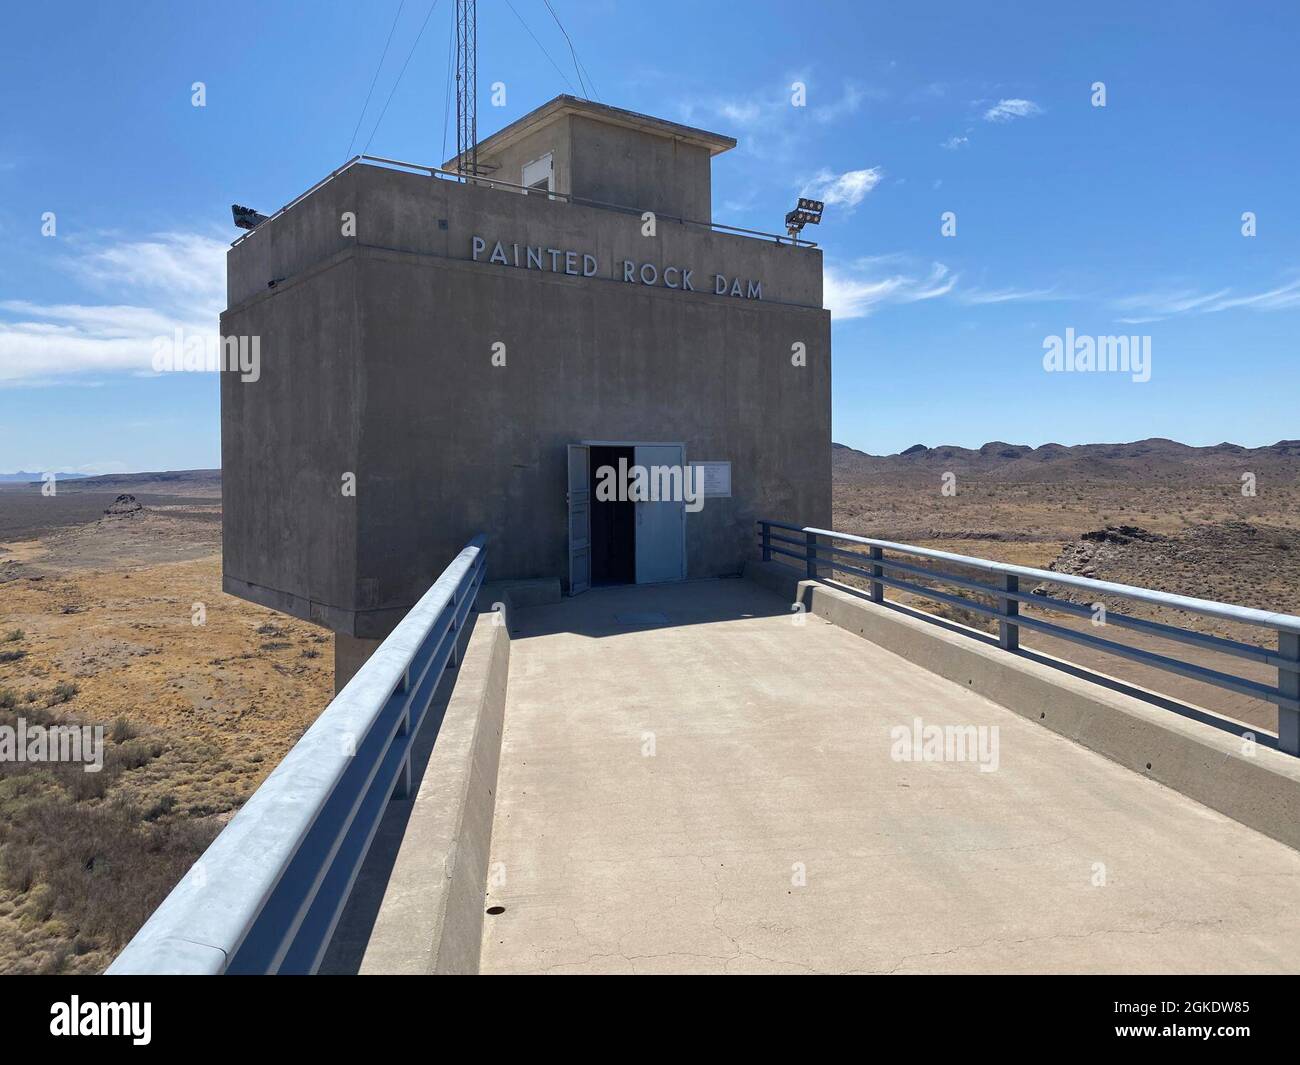 L'entrata della Camera di controllo della diga di roccia dipinta è illustrata marzo 24 vicino a Gila Bend, Arizona. La diga è un importante progetto di controllo delle alluvioni nel bacino di drenaggio del fiume Gila, costruito e gestito dal corpo dell'esercito degli Stati Uniti del distretto di Los Angeles. Foto Stock